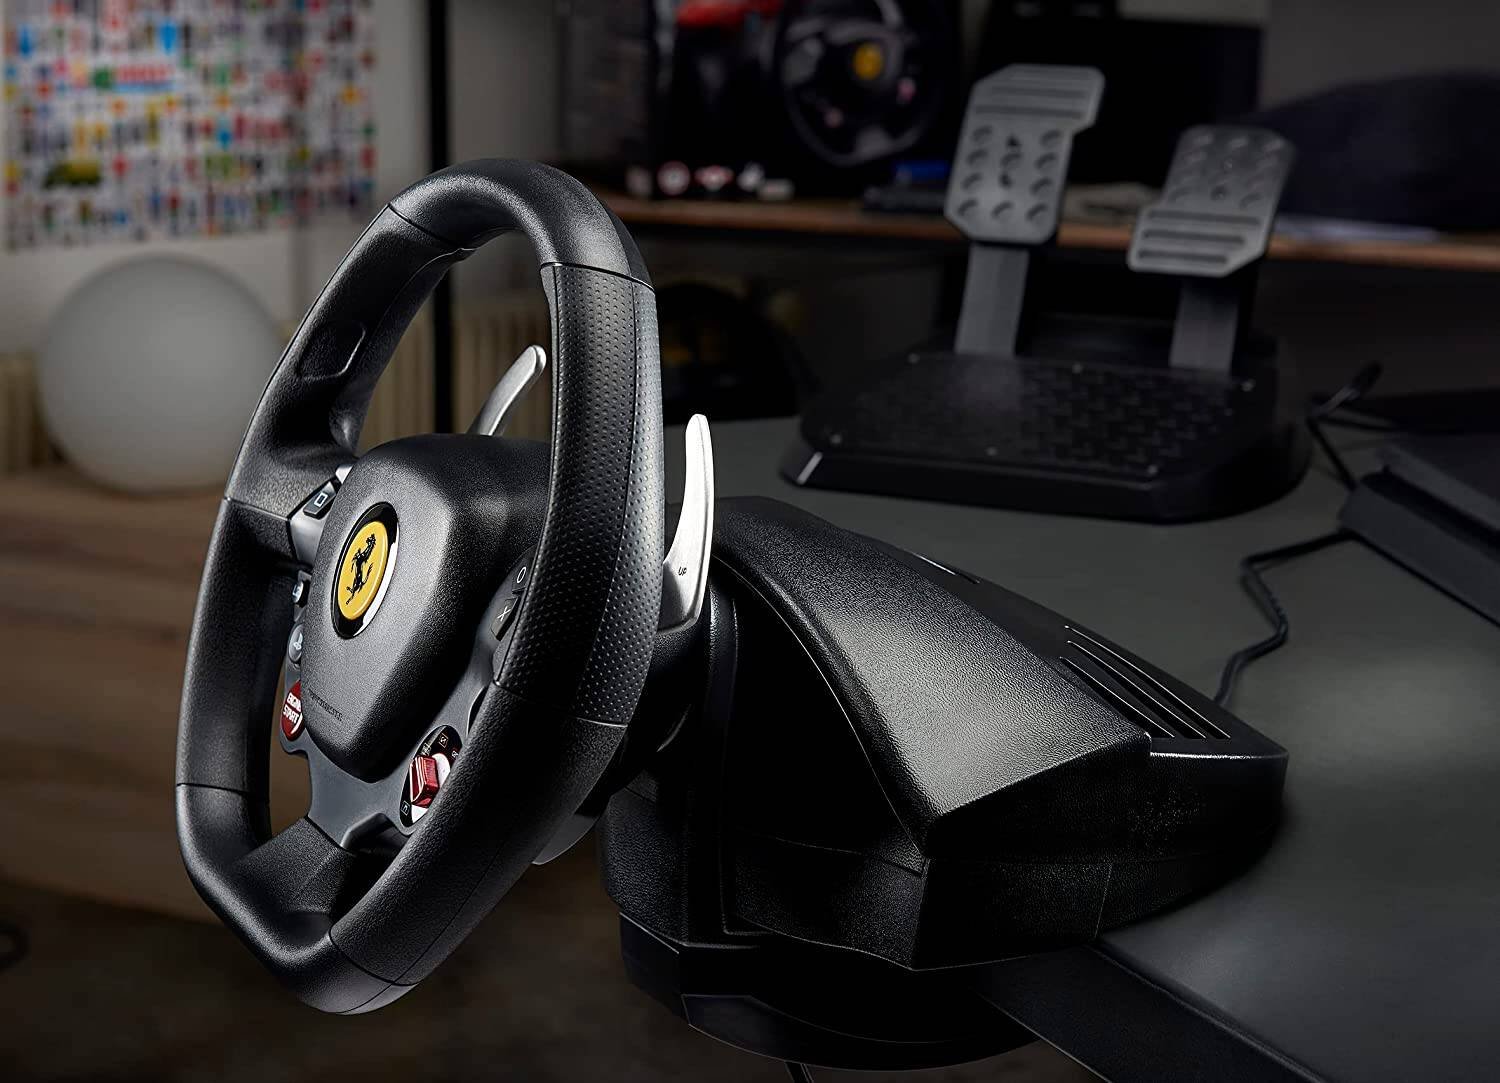 Thrustmaster presenta una nueva versión del volante Ferrari